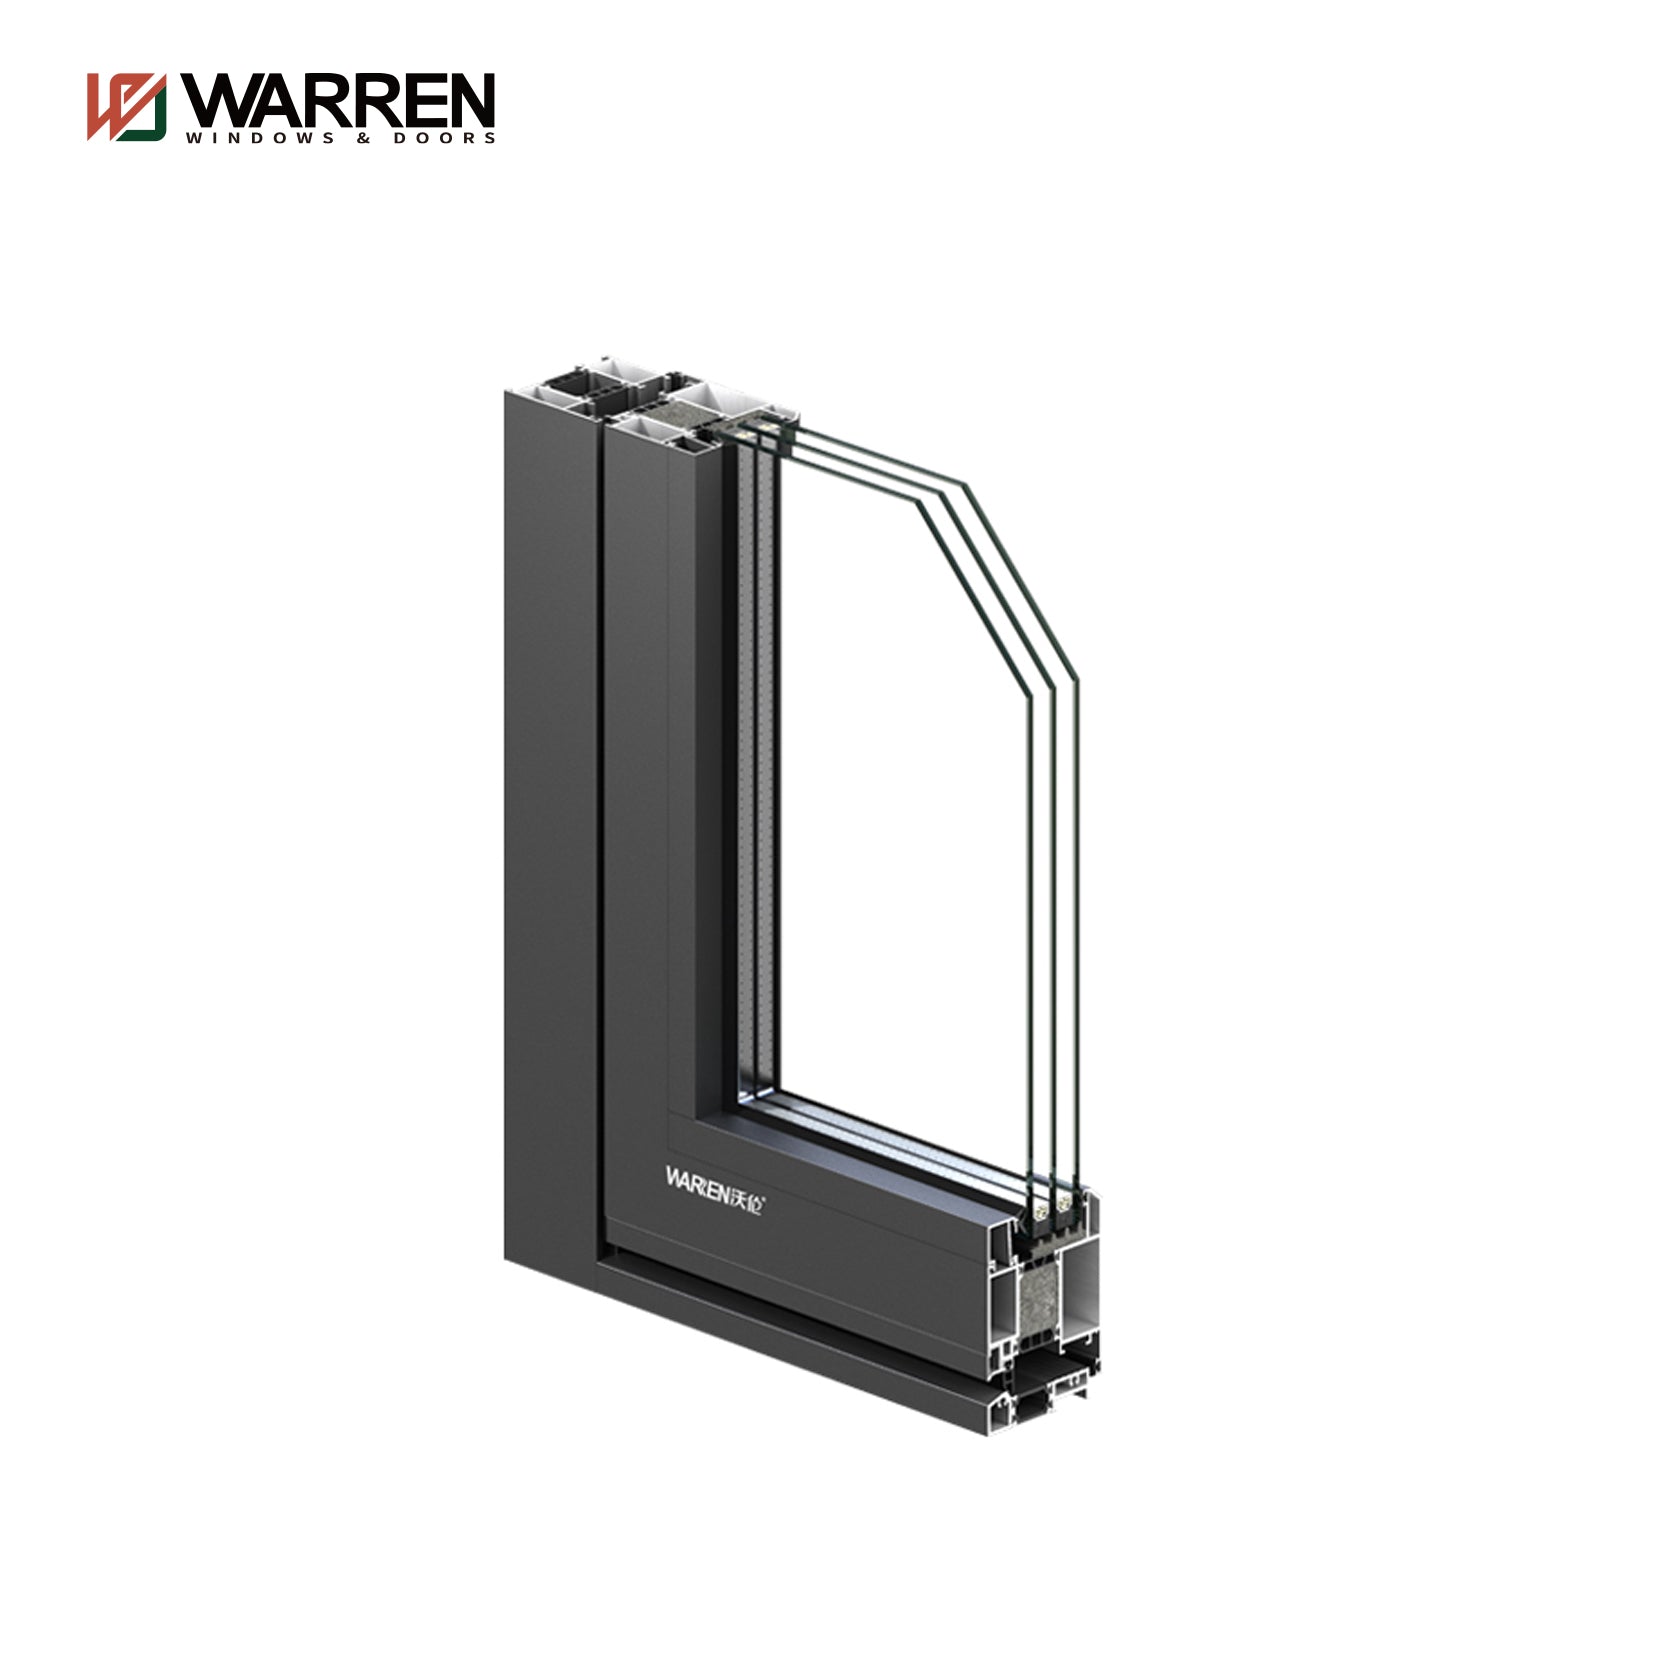 Warren 60x96 Exterior Double French Door With Modern Indoors Glass Double Doors